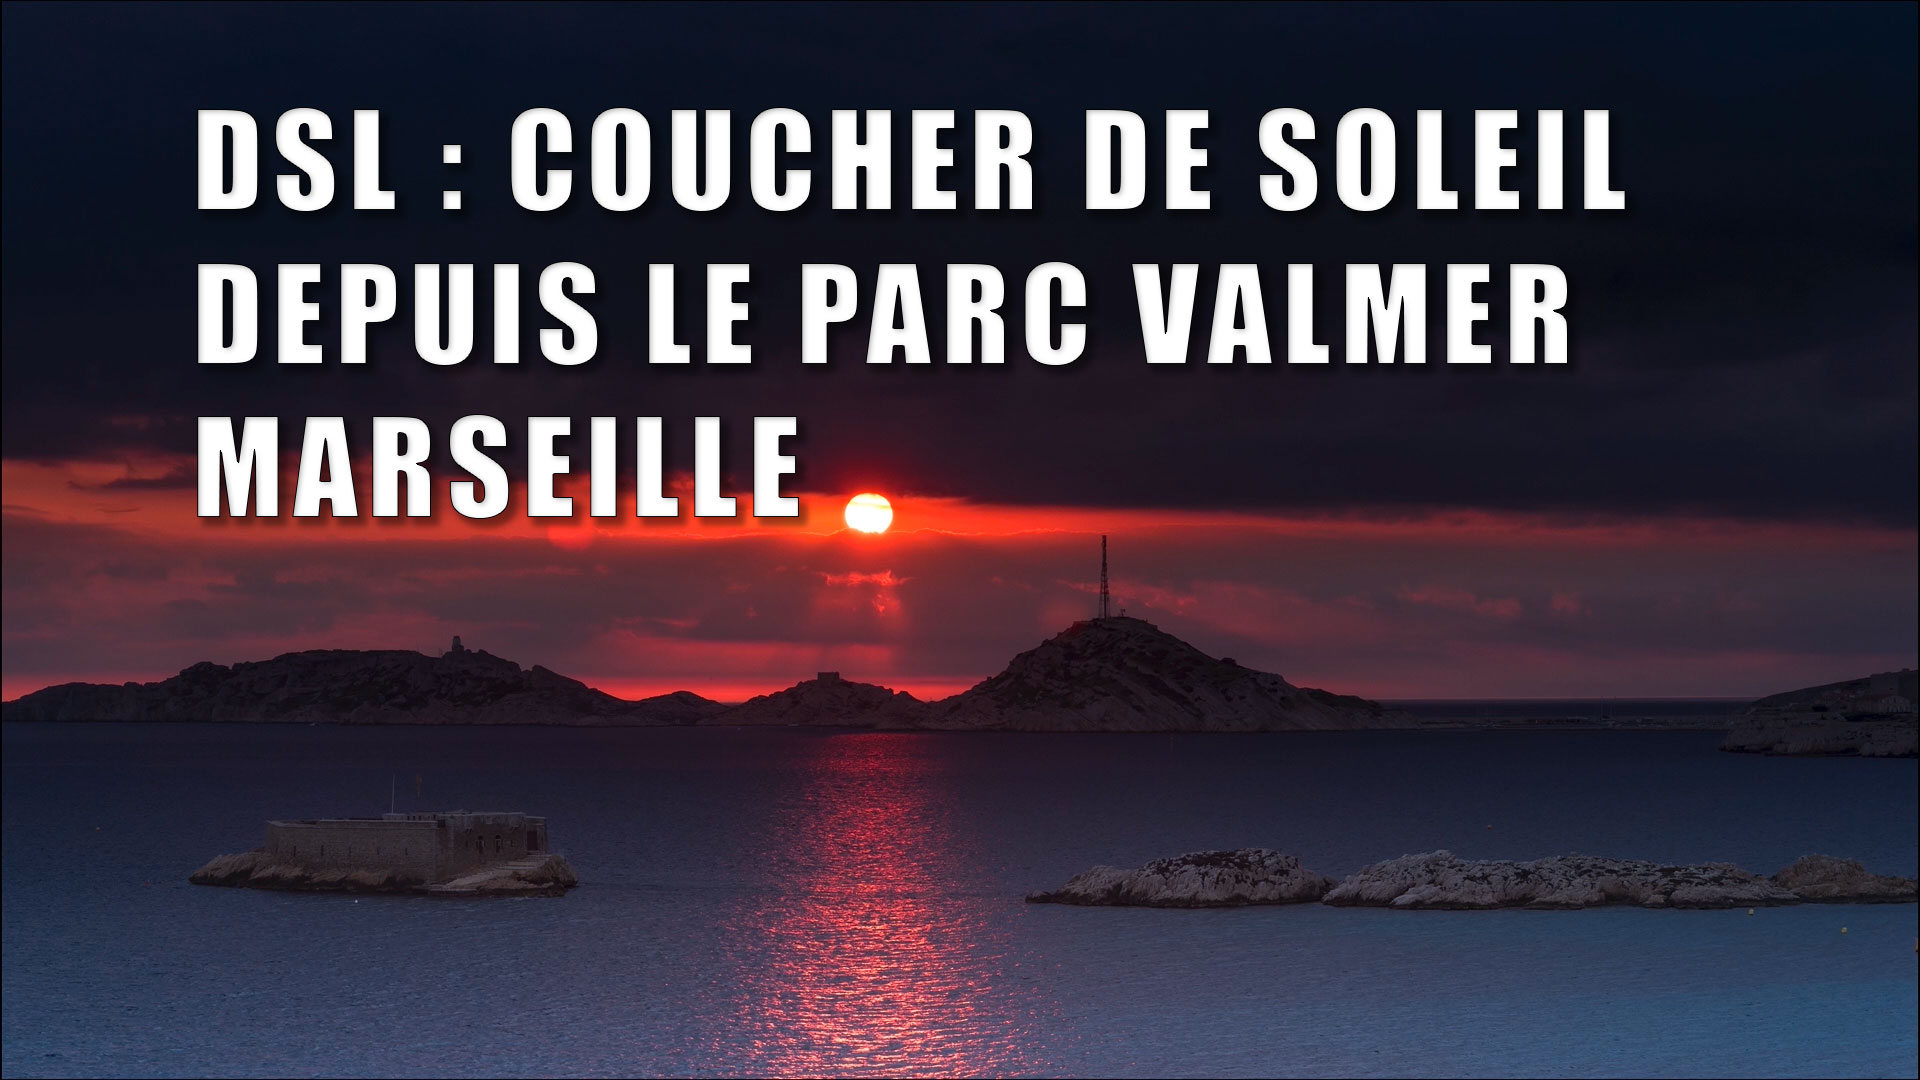 DSL (Développement sous Lightroom) : Coucher de soleil depuis le parc Valmer – Marseille